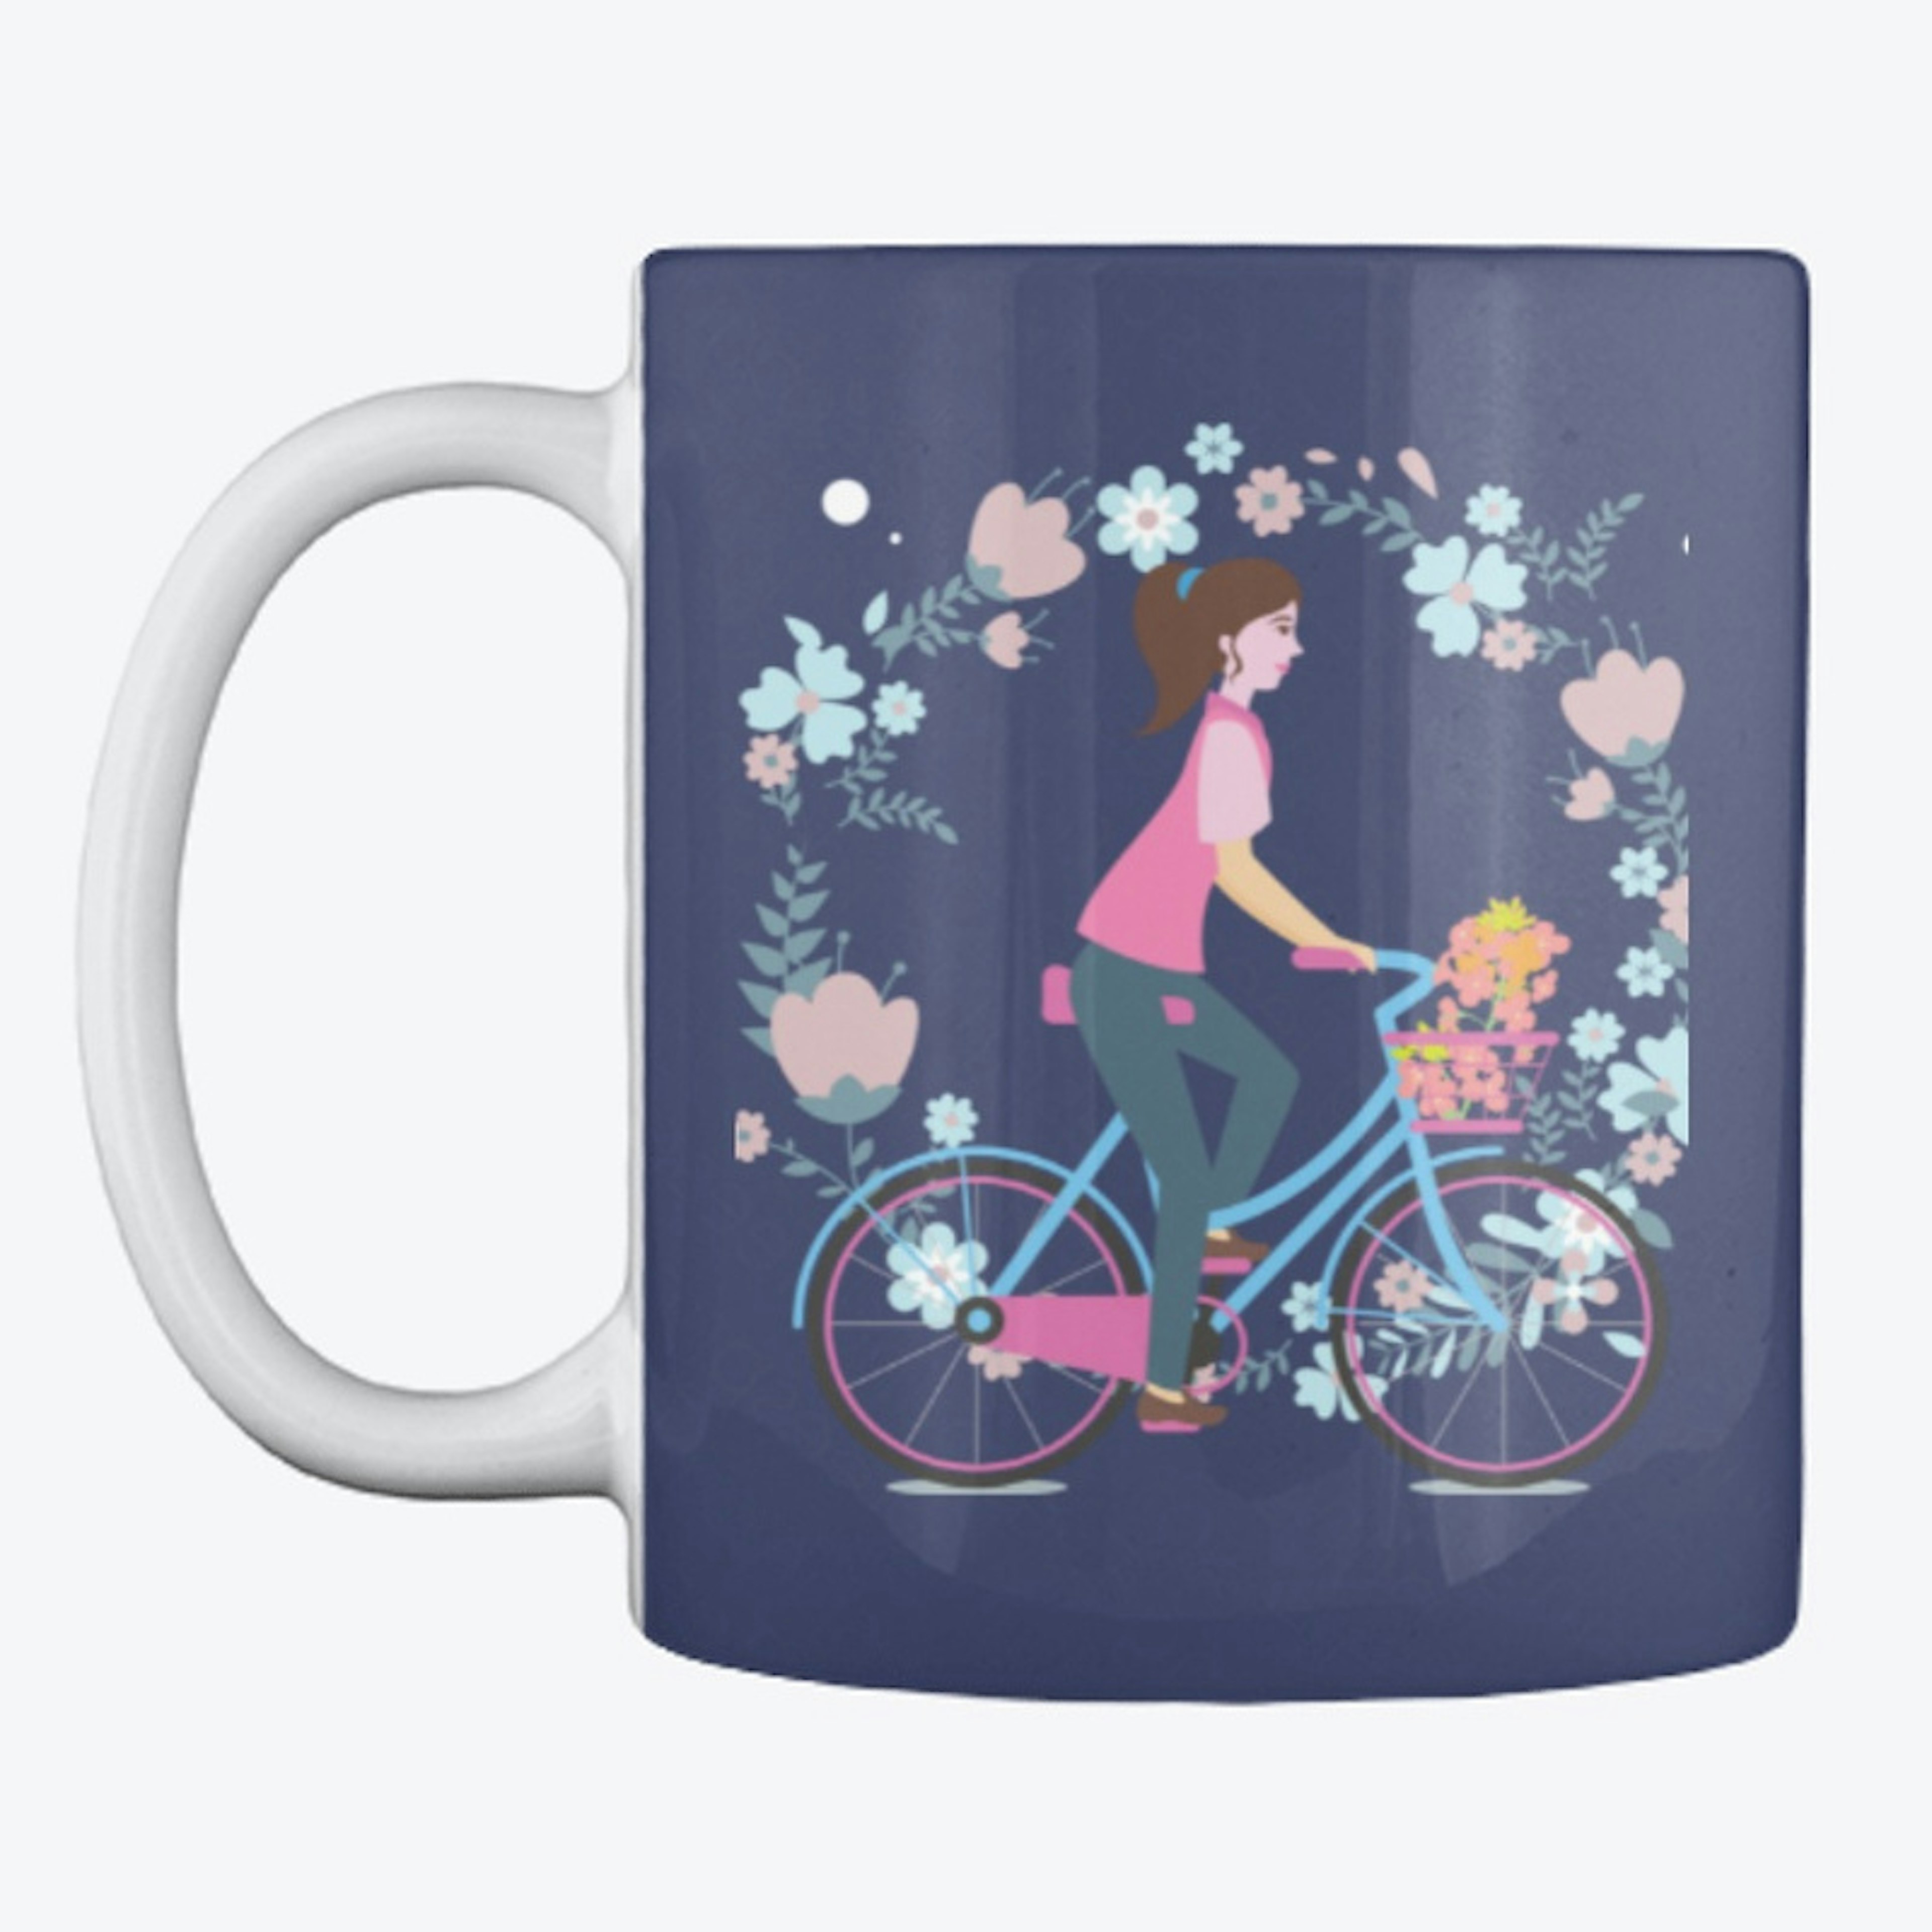 Woman in bike